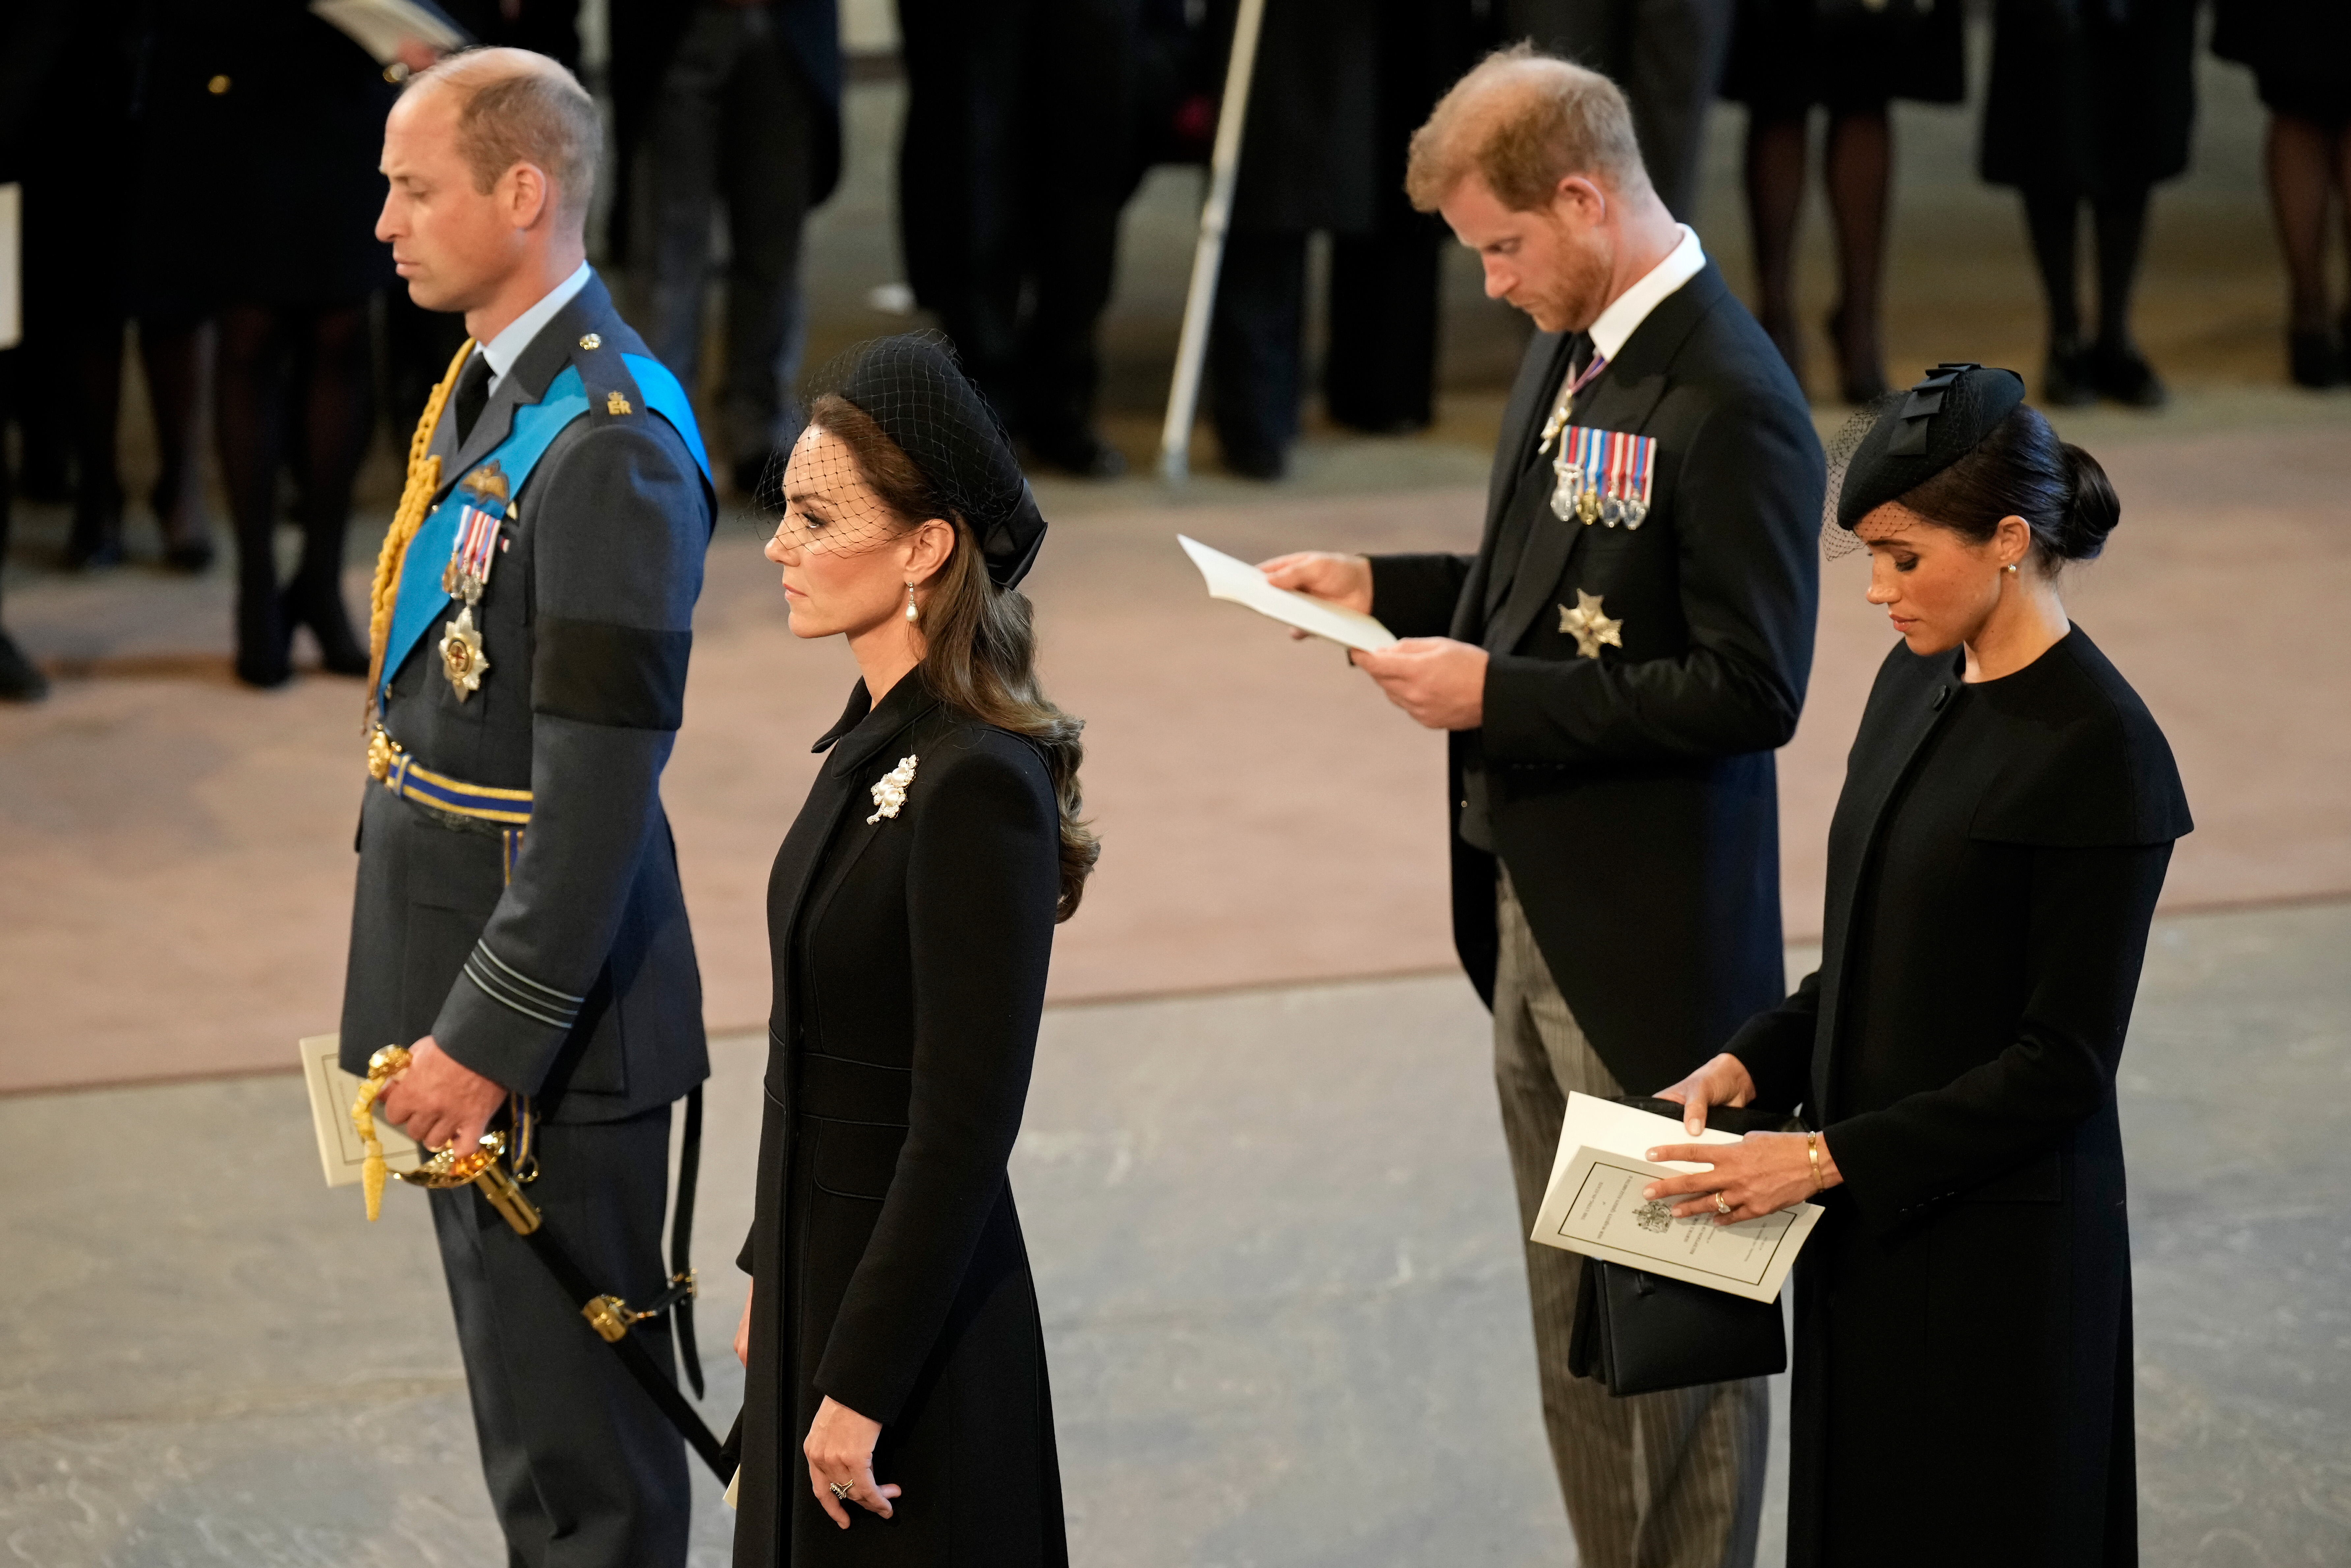 El príncipe William, la princesa Catherine, Meghan Markle y el príncipe Harry en el Lying-in State of Queen Elizabeth II el 14 de septiembre de 2022 en Londres, Inglaterra | Foto: Getty Images